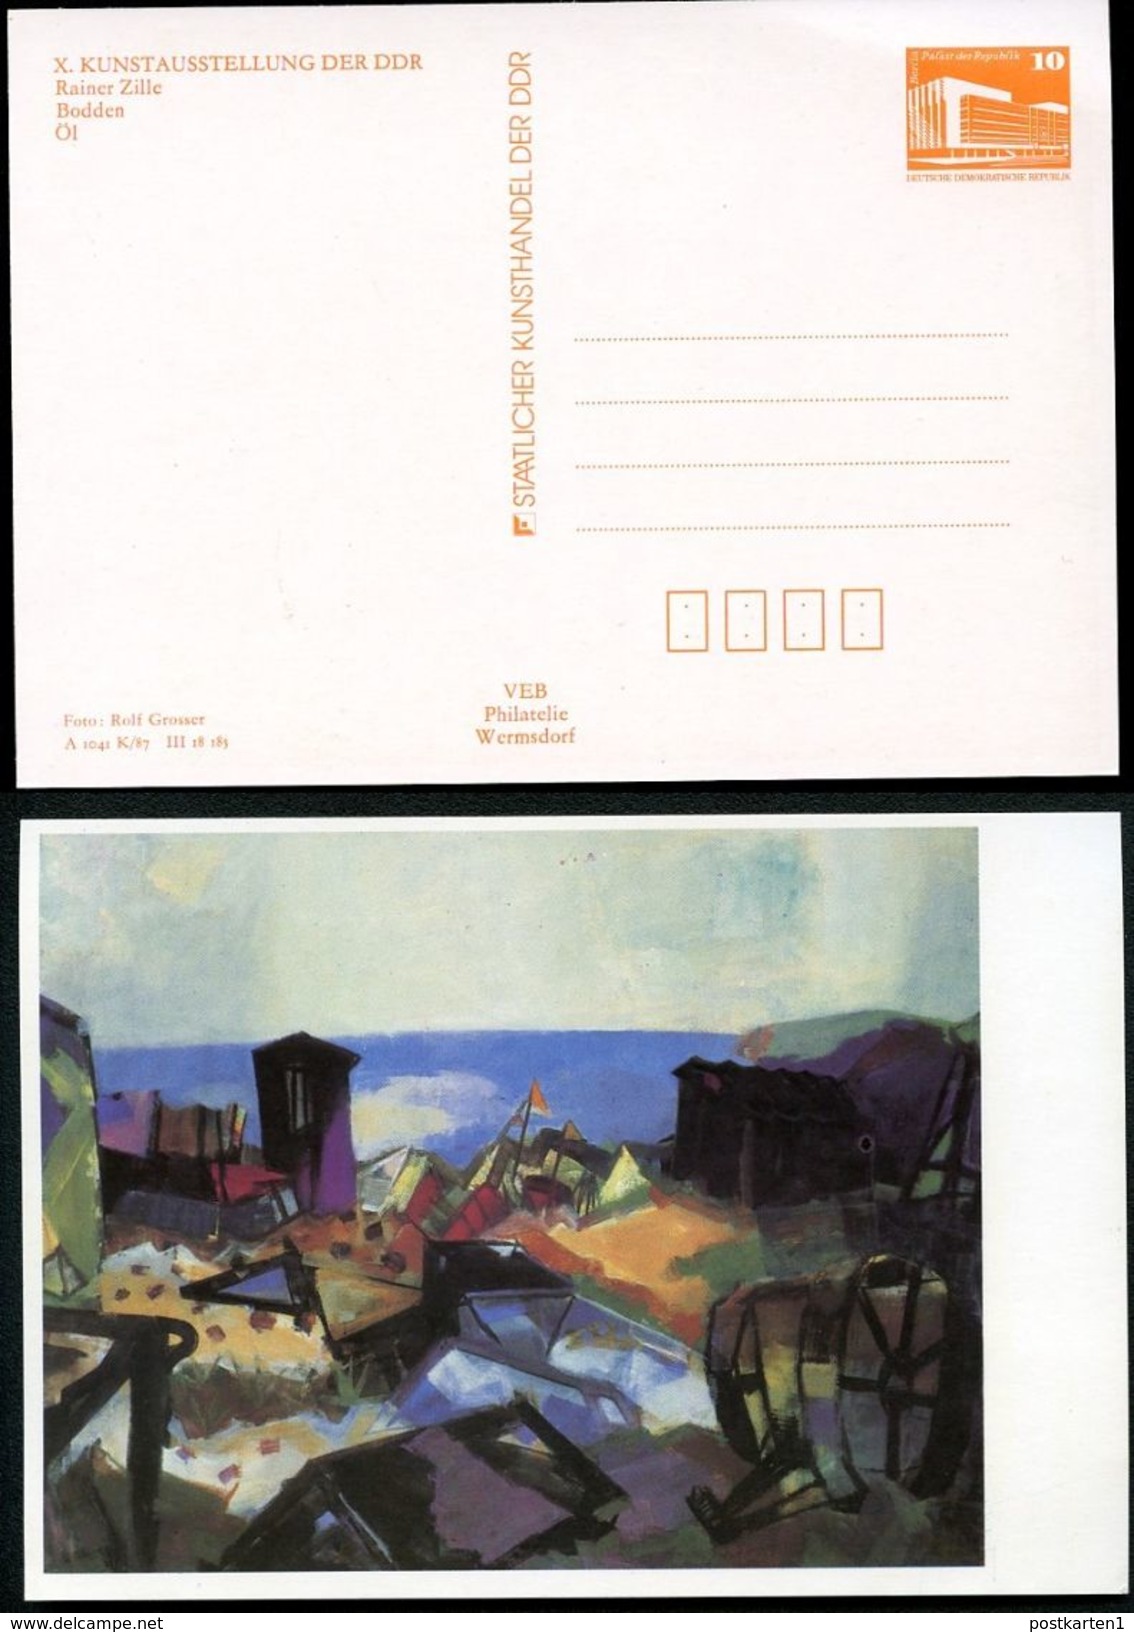 DDR Privat-Postkarte PP19 B1/005-1b KUNSTAUSSTELLUNG DRESDEN 1987 NGK 3,00 € - Cartes Postales Privées - Neuves